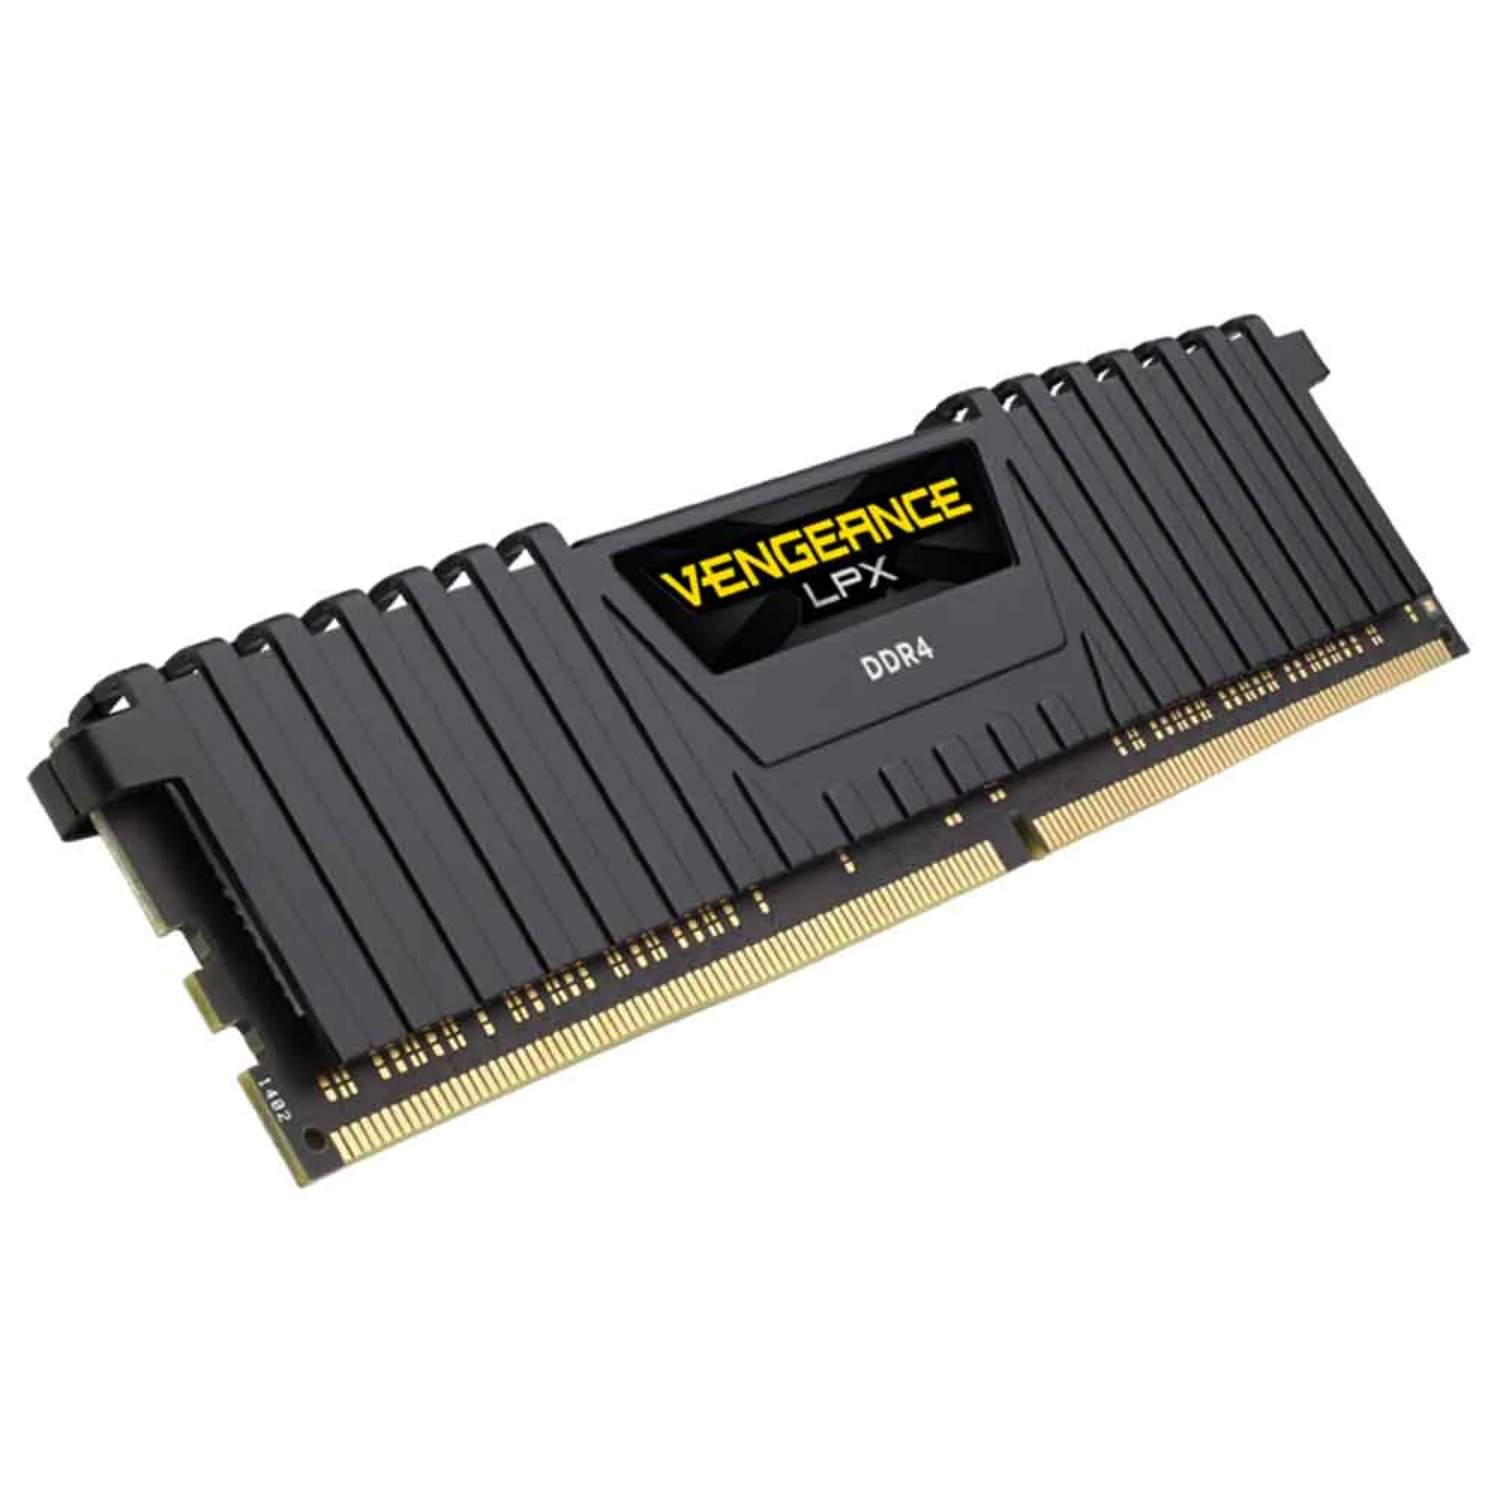 Memória RAM DDR4 Corsair Vengeance LPX 16GB / 2400MHz -(CMK16GX4M1A2400C16)